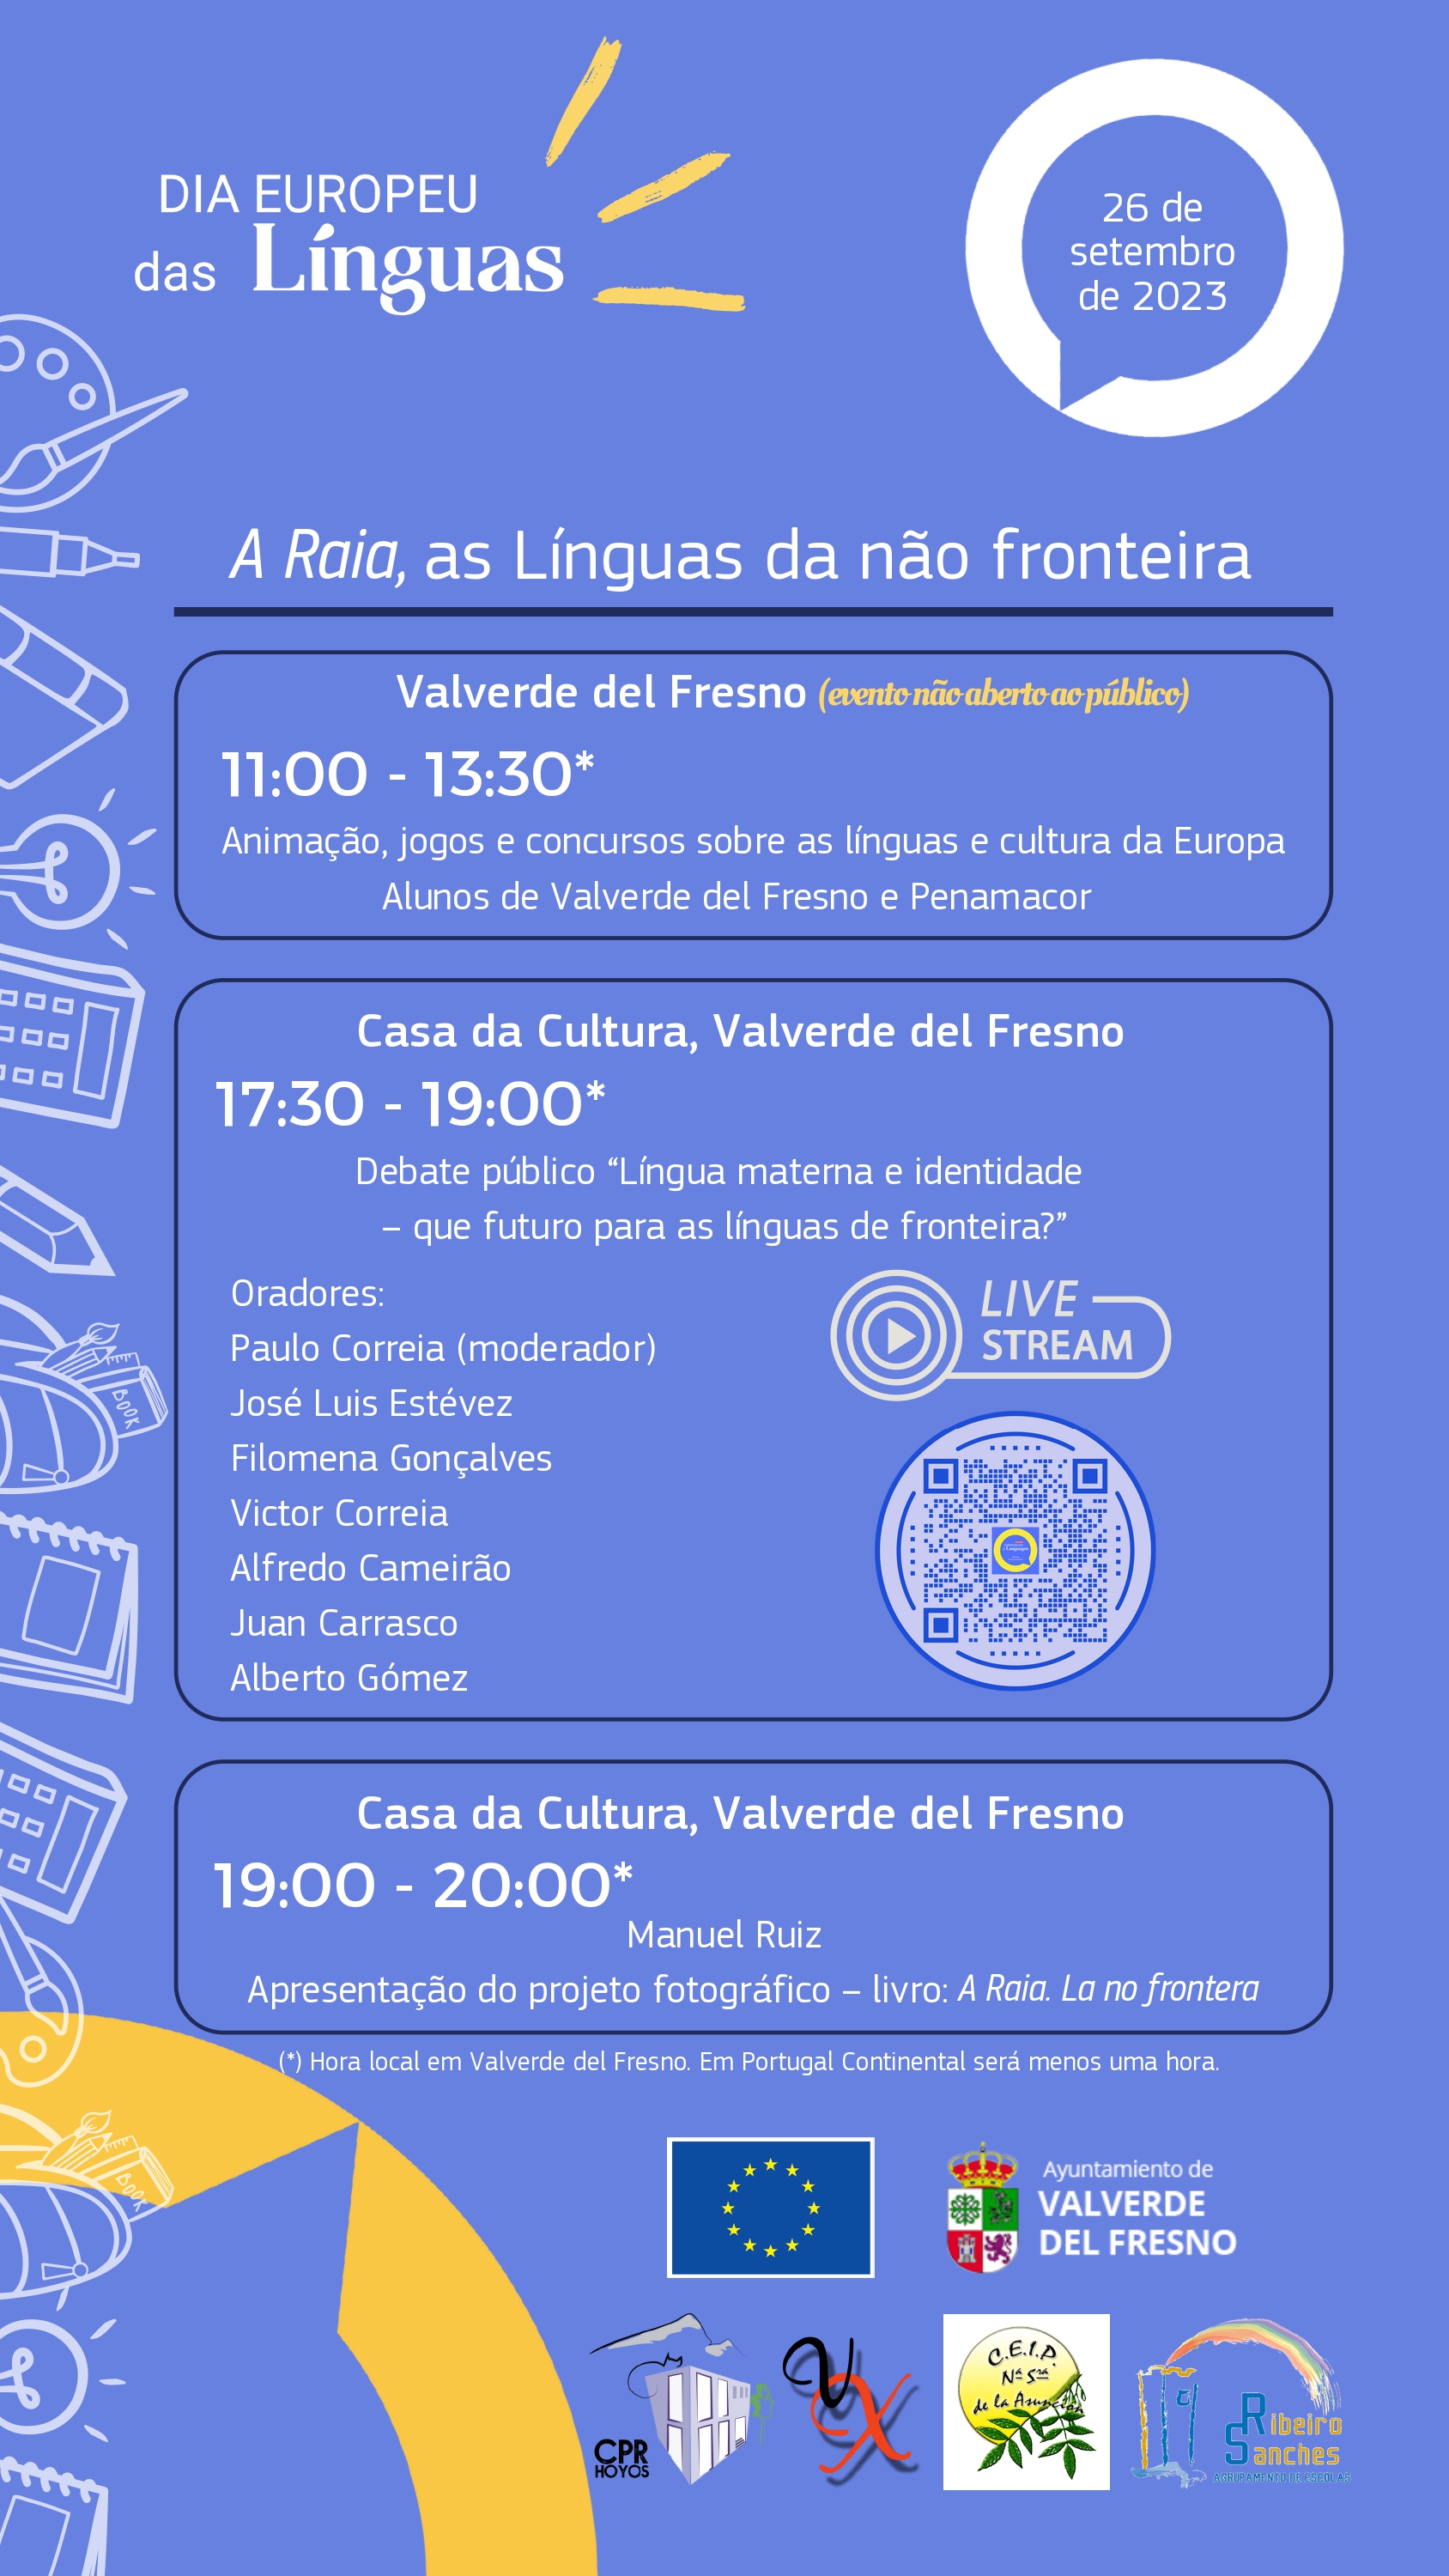 Dia Europeu das Línguas 2023 Valverde del Fresno